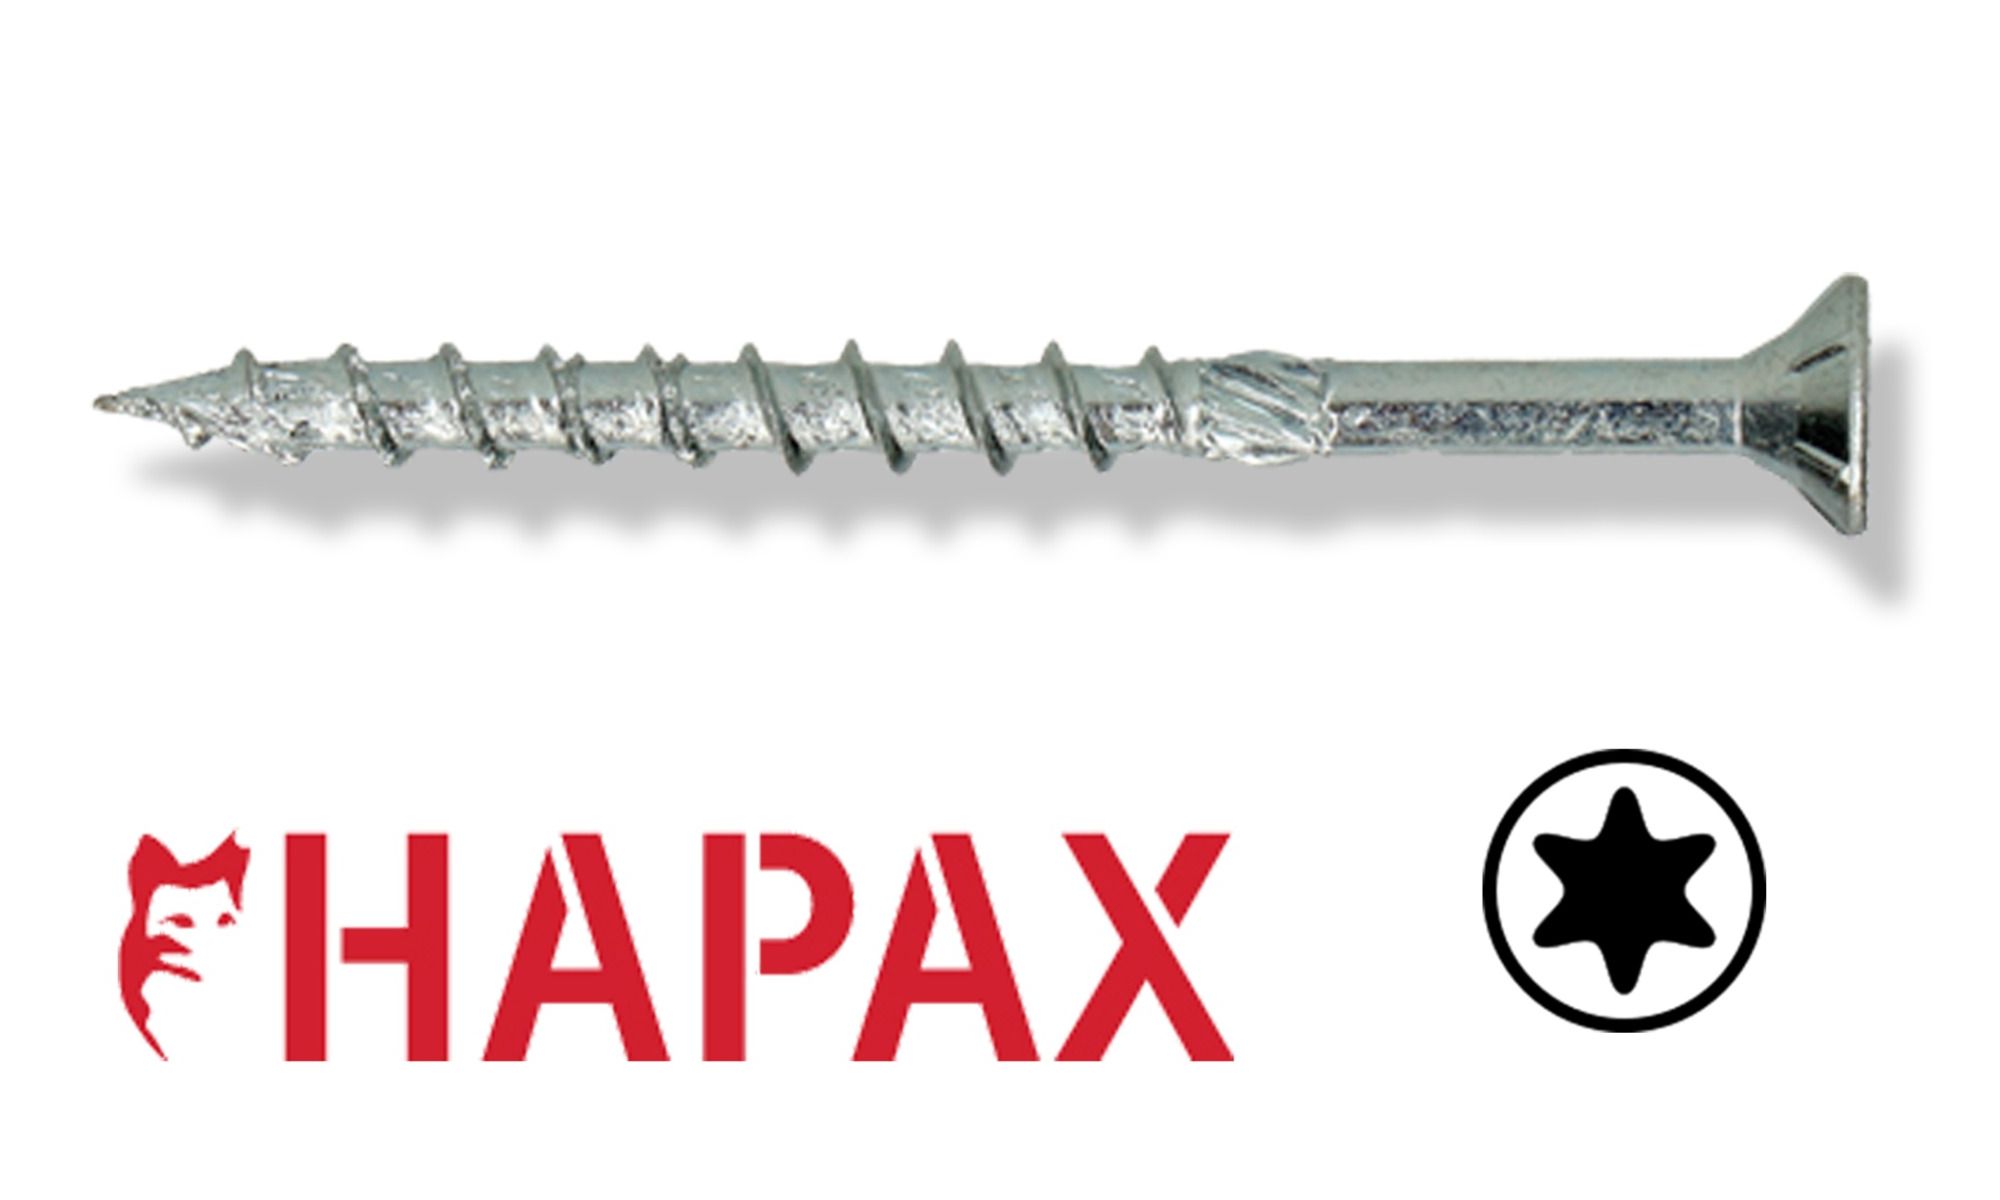 Hapax Constructieschroef 6x260